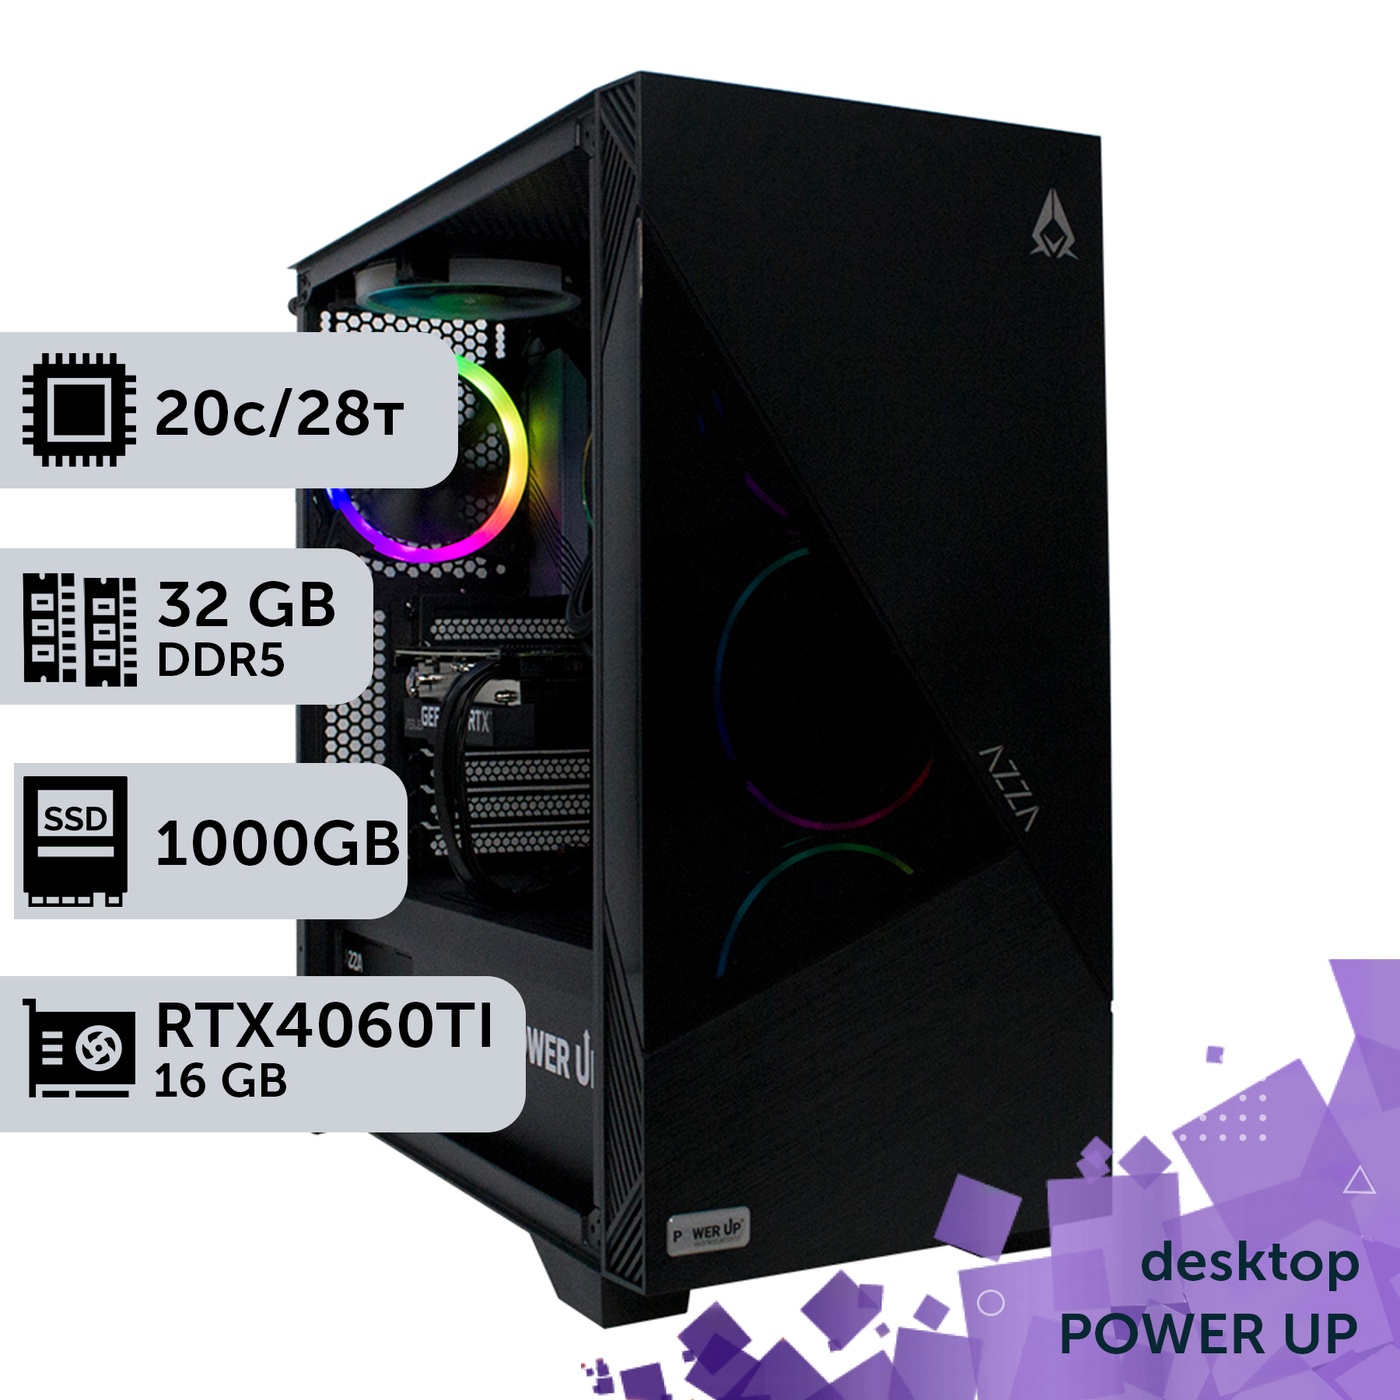 Робоча станція PowerUp Desktop #316 Core i7 14700K/32 GB/SSD 1TB/GeForce RTX 4060Ti 16GB